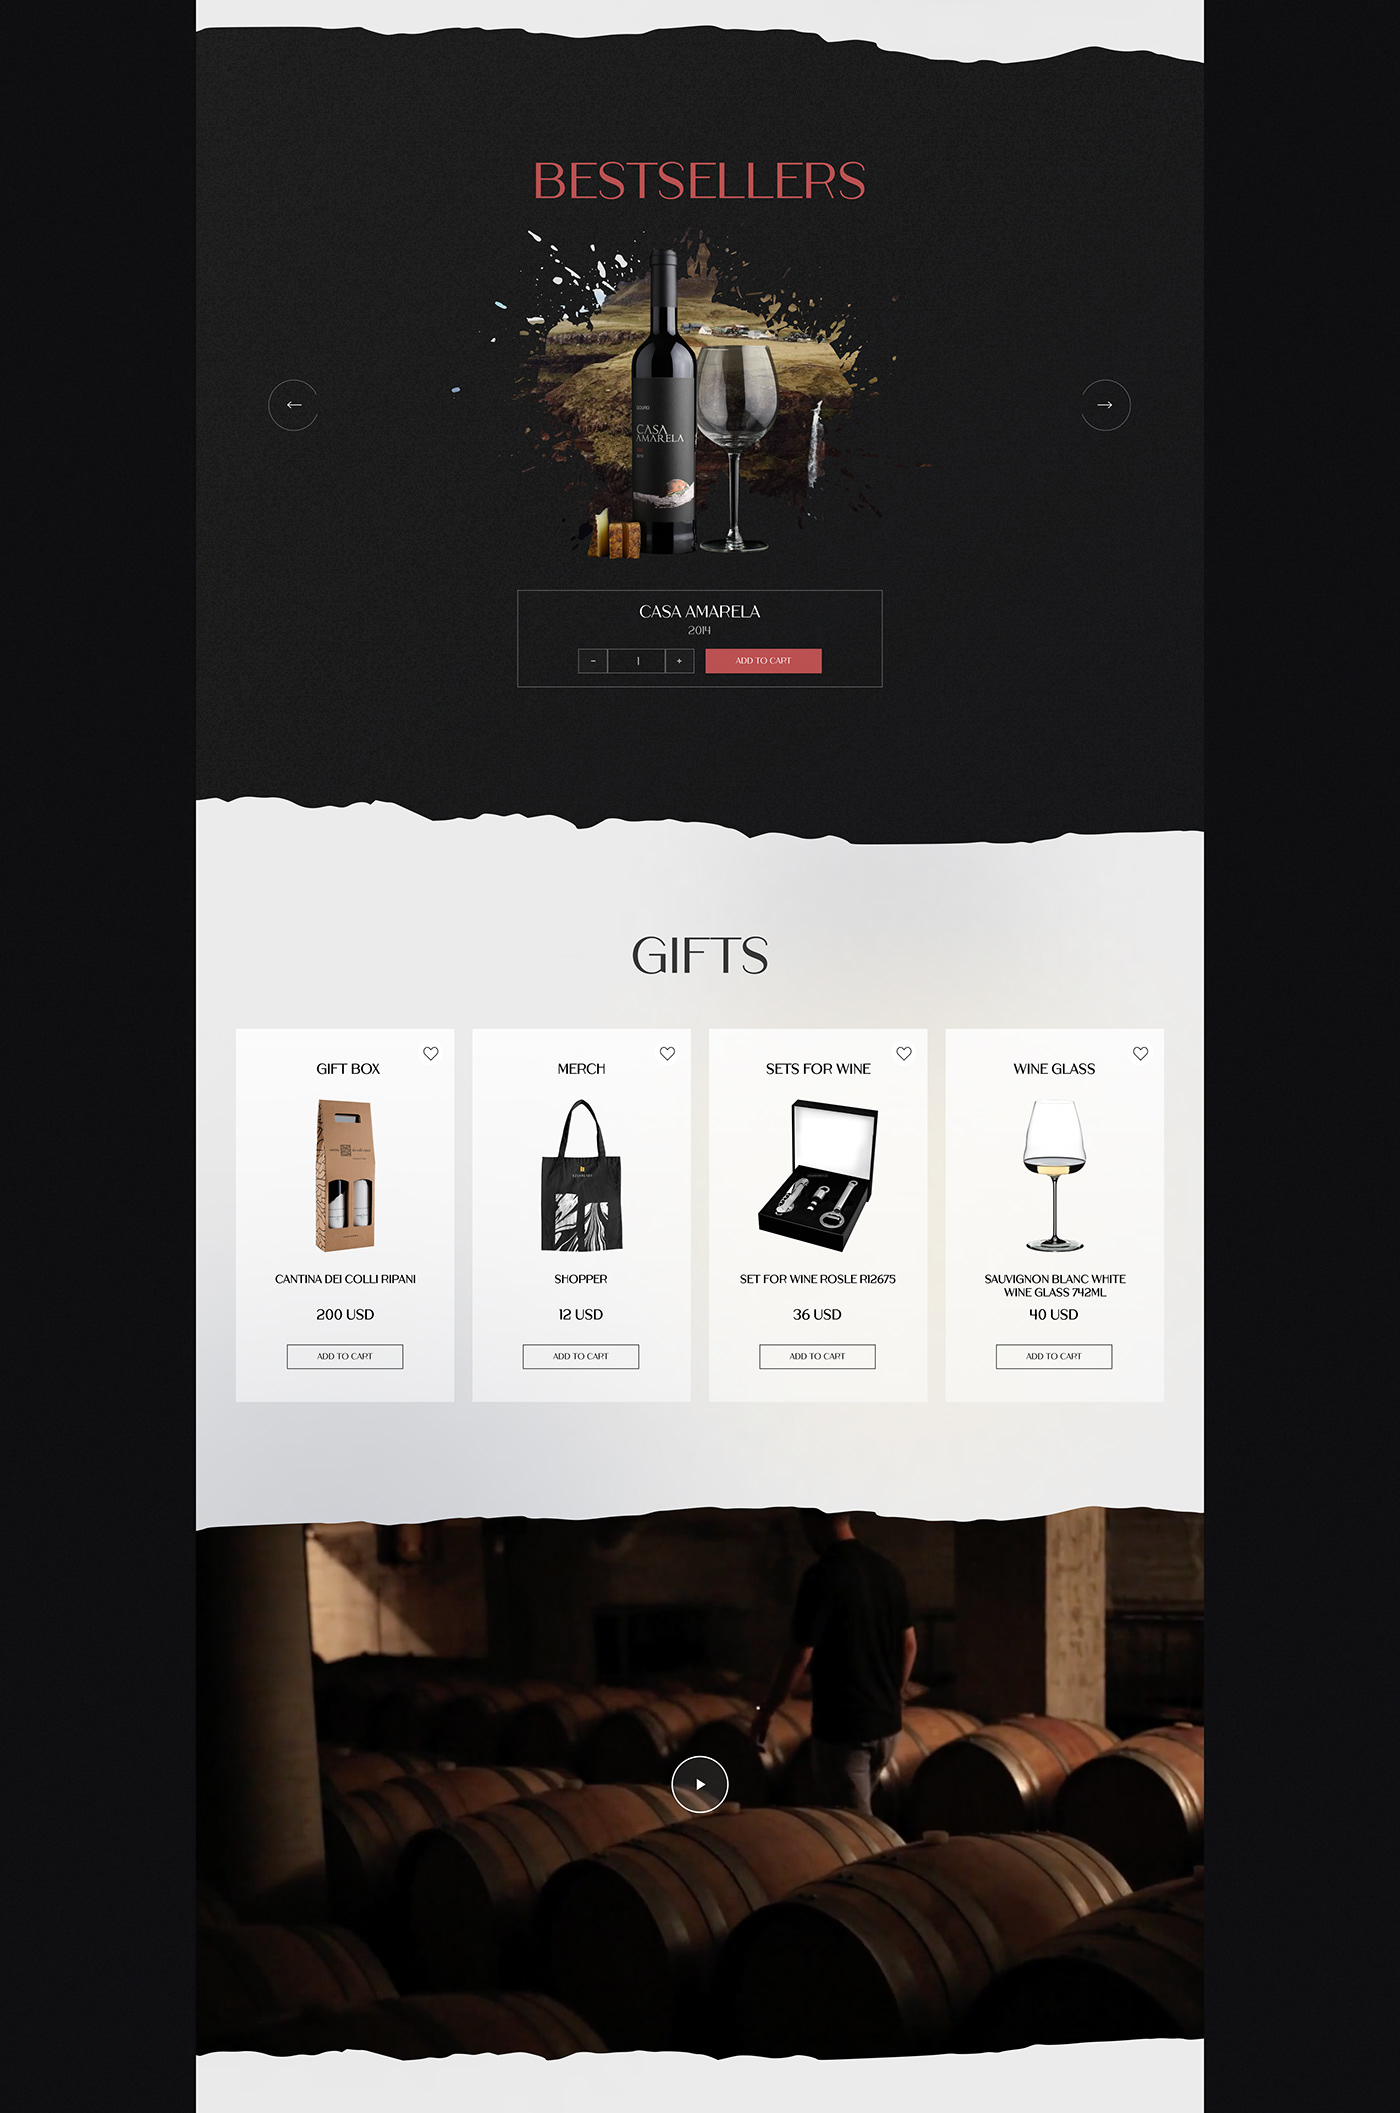 UI ui design UI/UX Web Design  Website wine Wine Shop winery